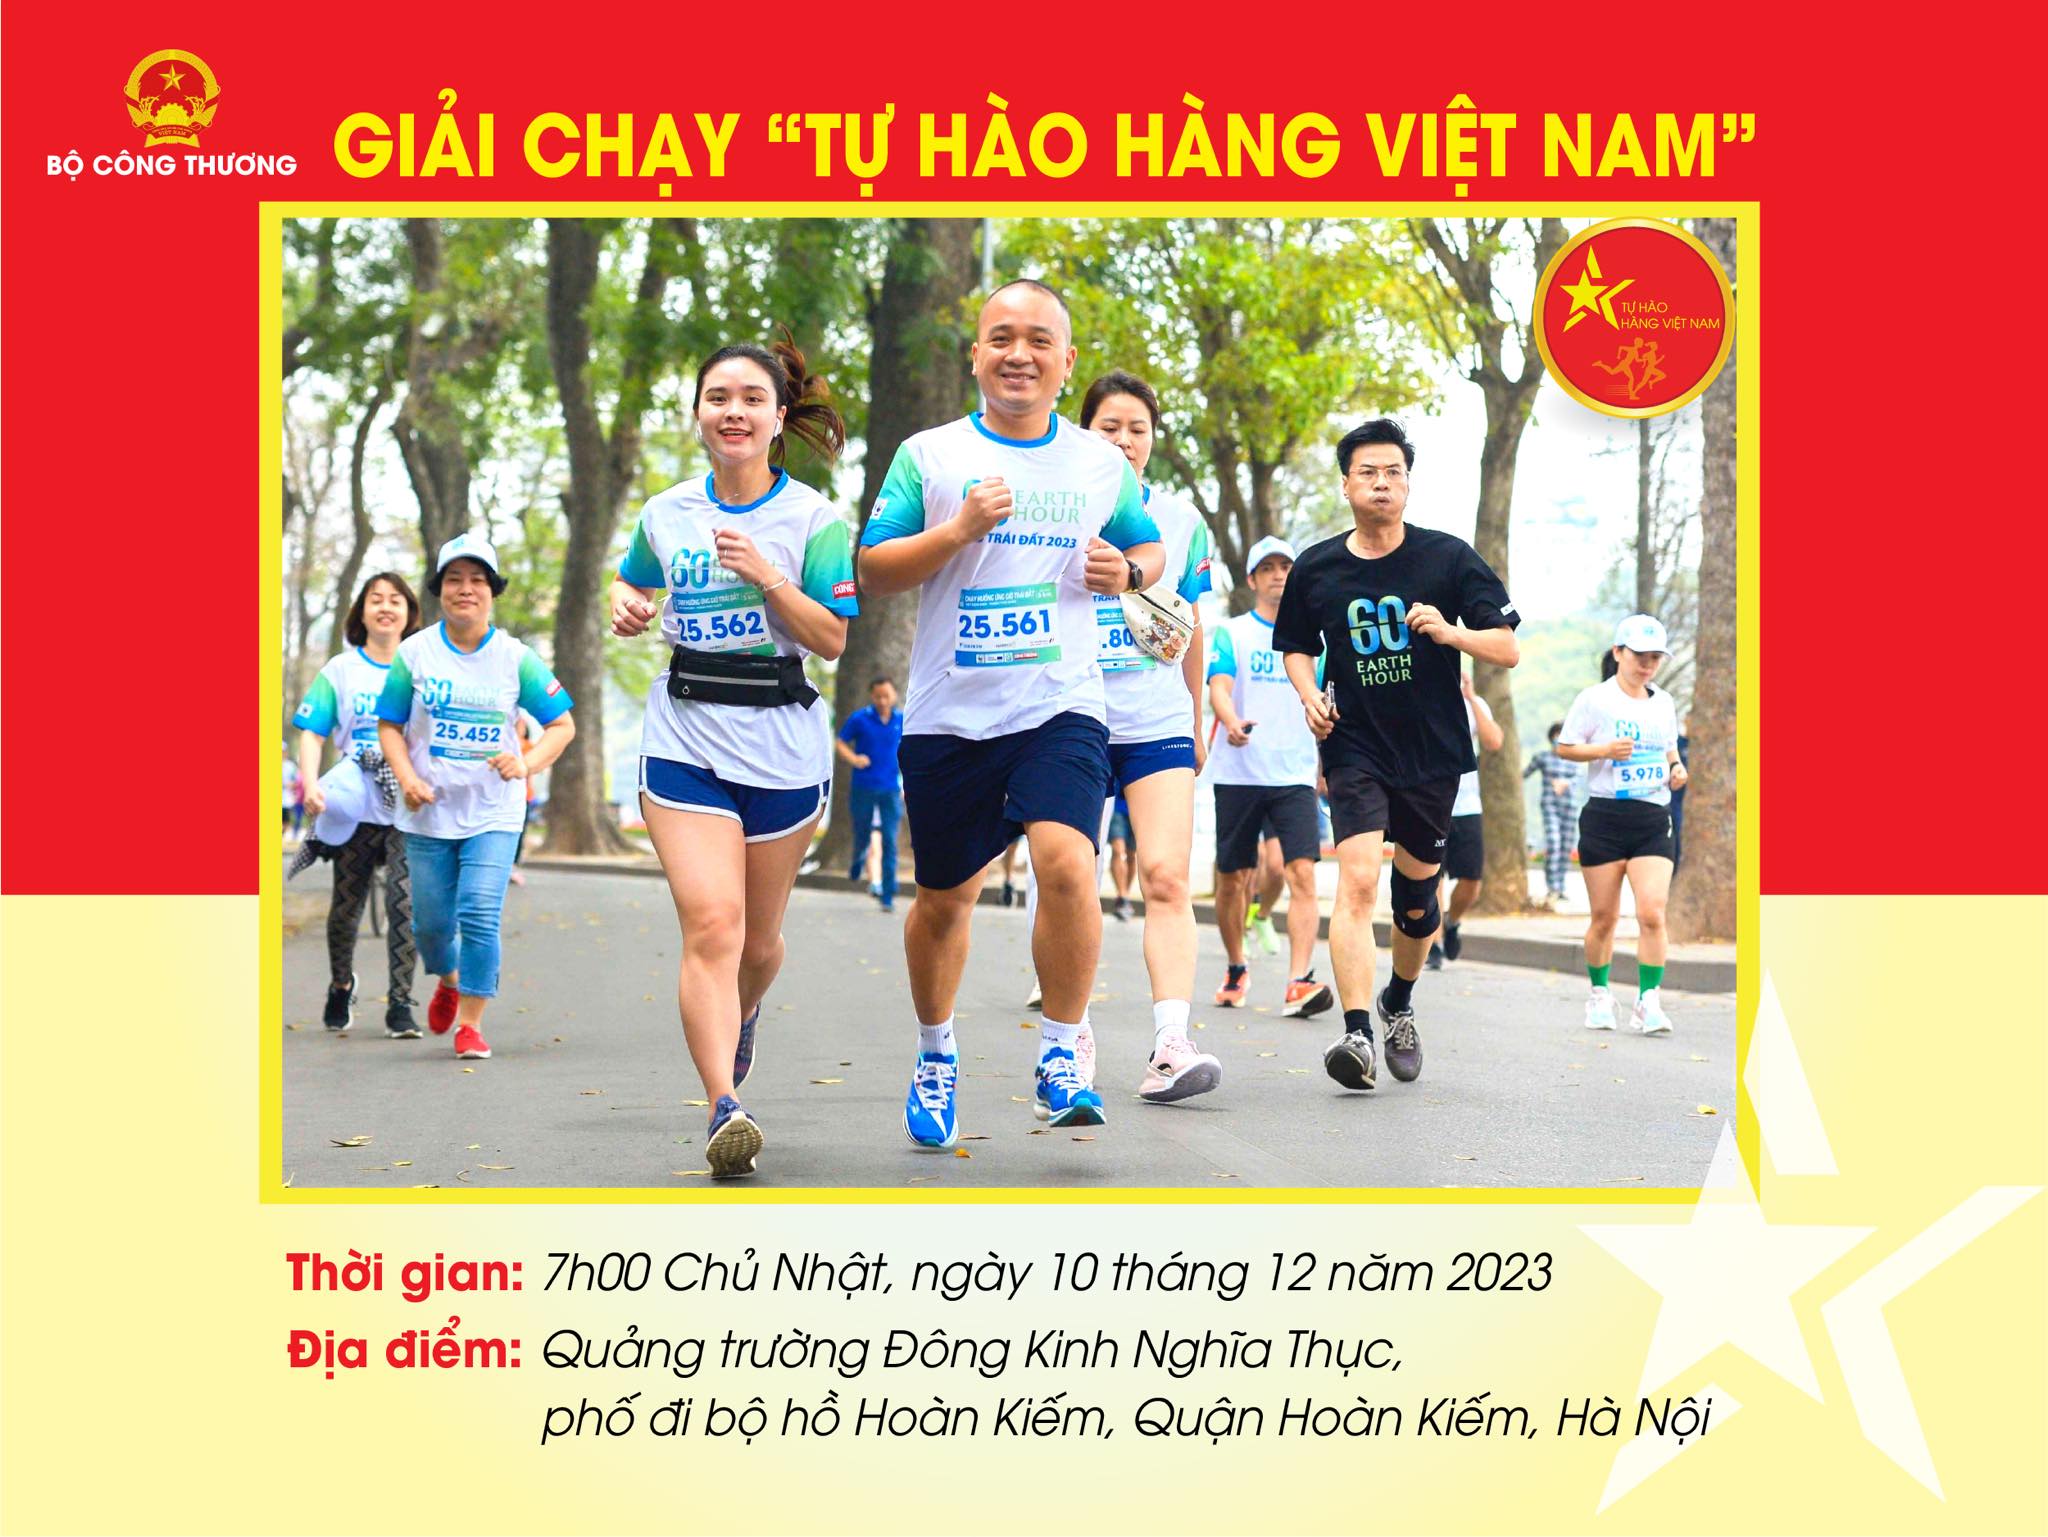 Giải chạy "Tự hào hàng Việt Nam" có quy mô 1.000 vận động viên chuyên và không chuyên tham gia